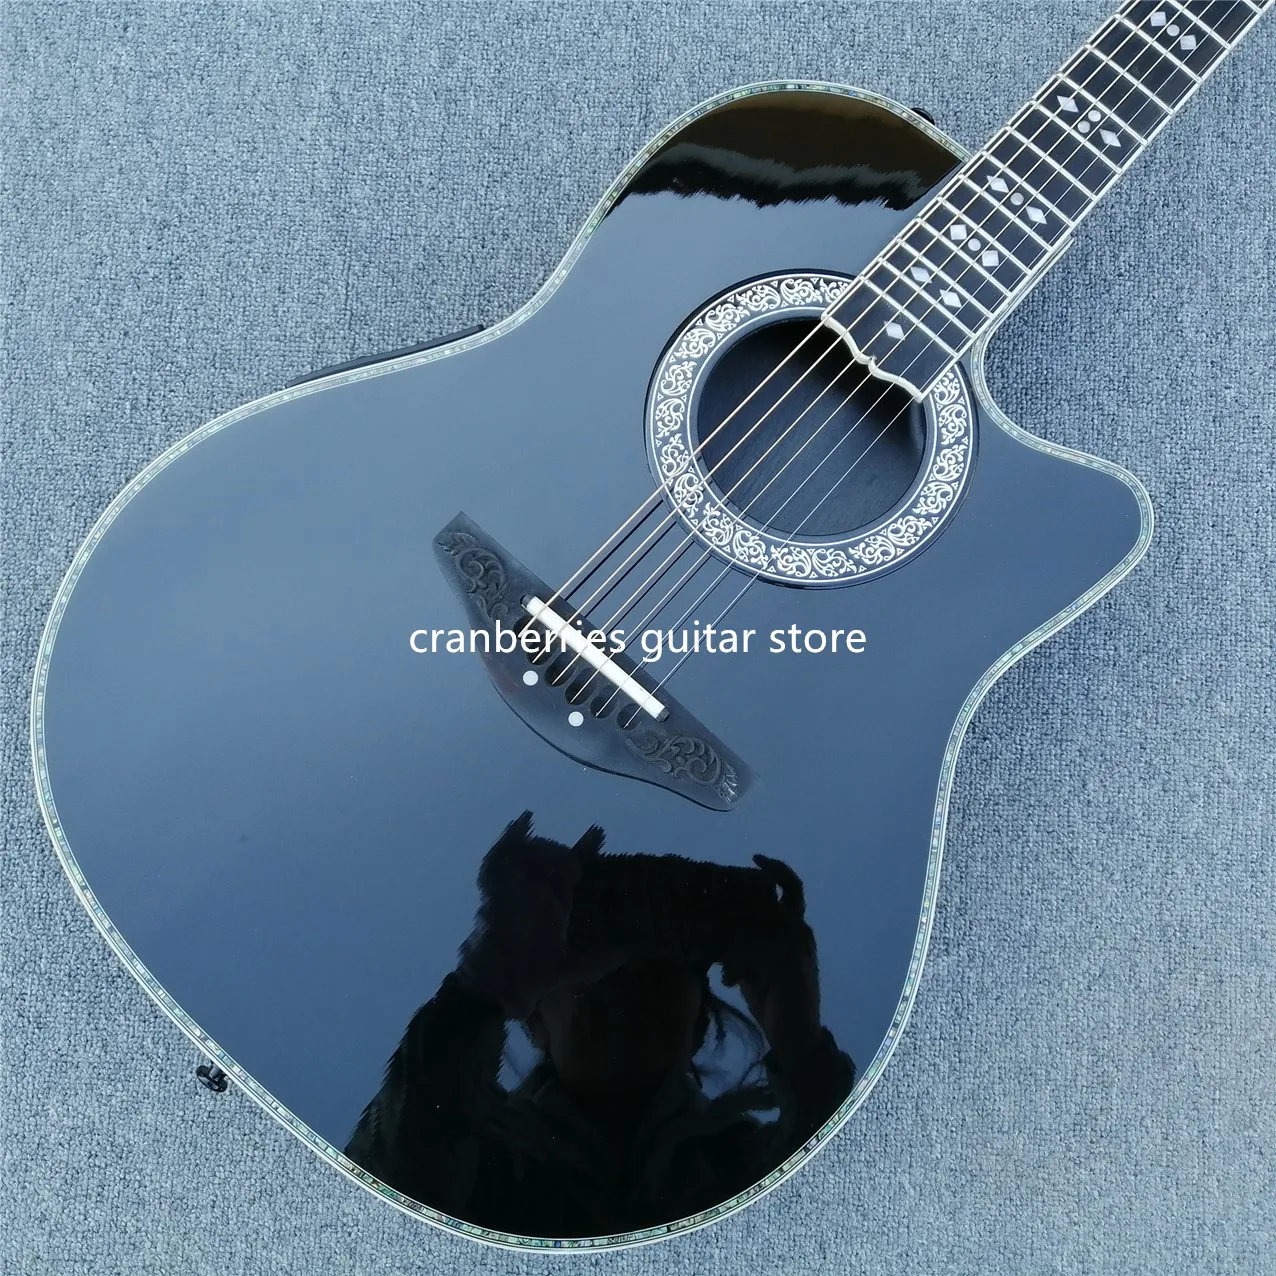 Хорошее качество, 6-струнная акустическая гитара с круглой задней основой, из углеродного волокна